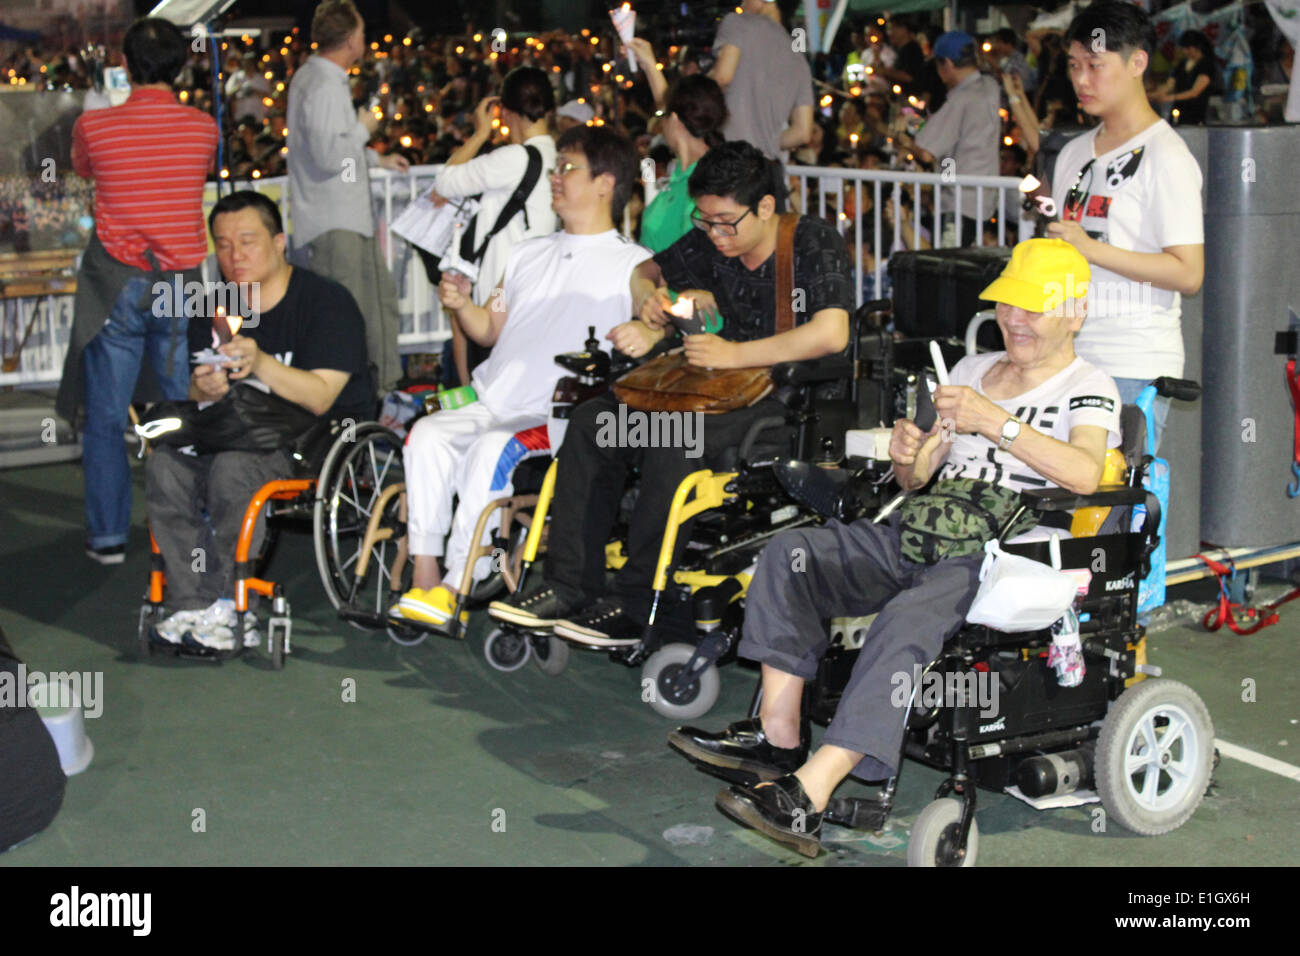 Hong Kong. 04 Juin, 2014. Des milliers participent à la veillée aux chandelles à Hong Kong. Crédit : Robert SC Kemp/Alamy Live News Banque D'Images